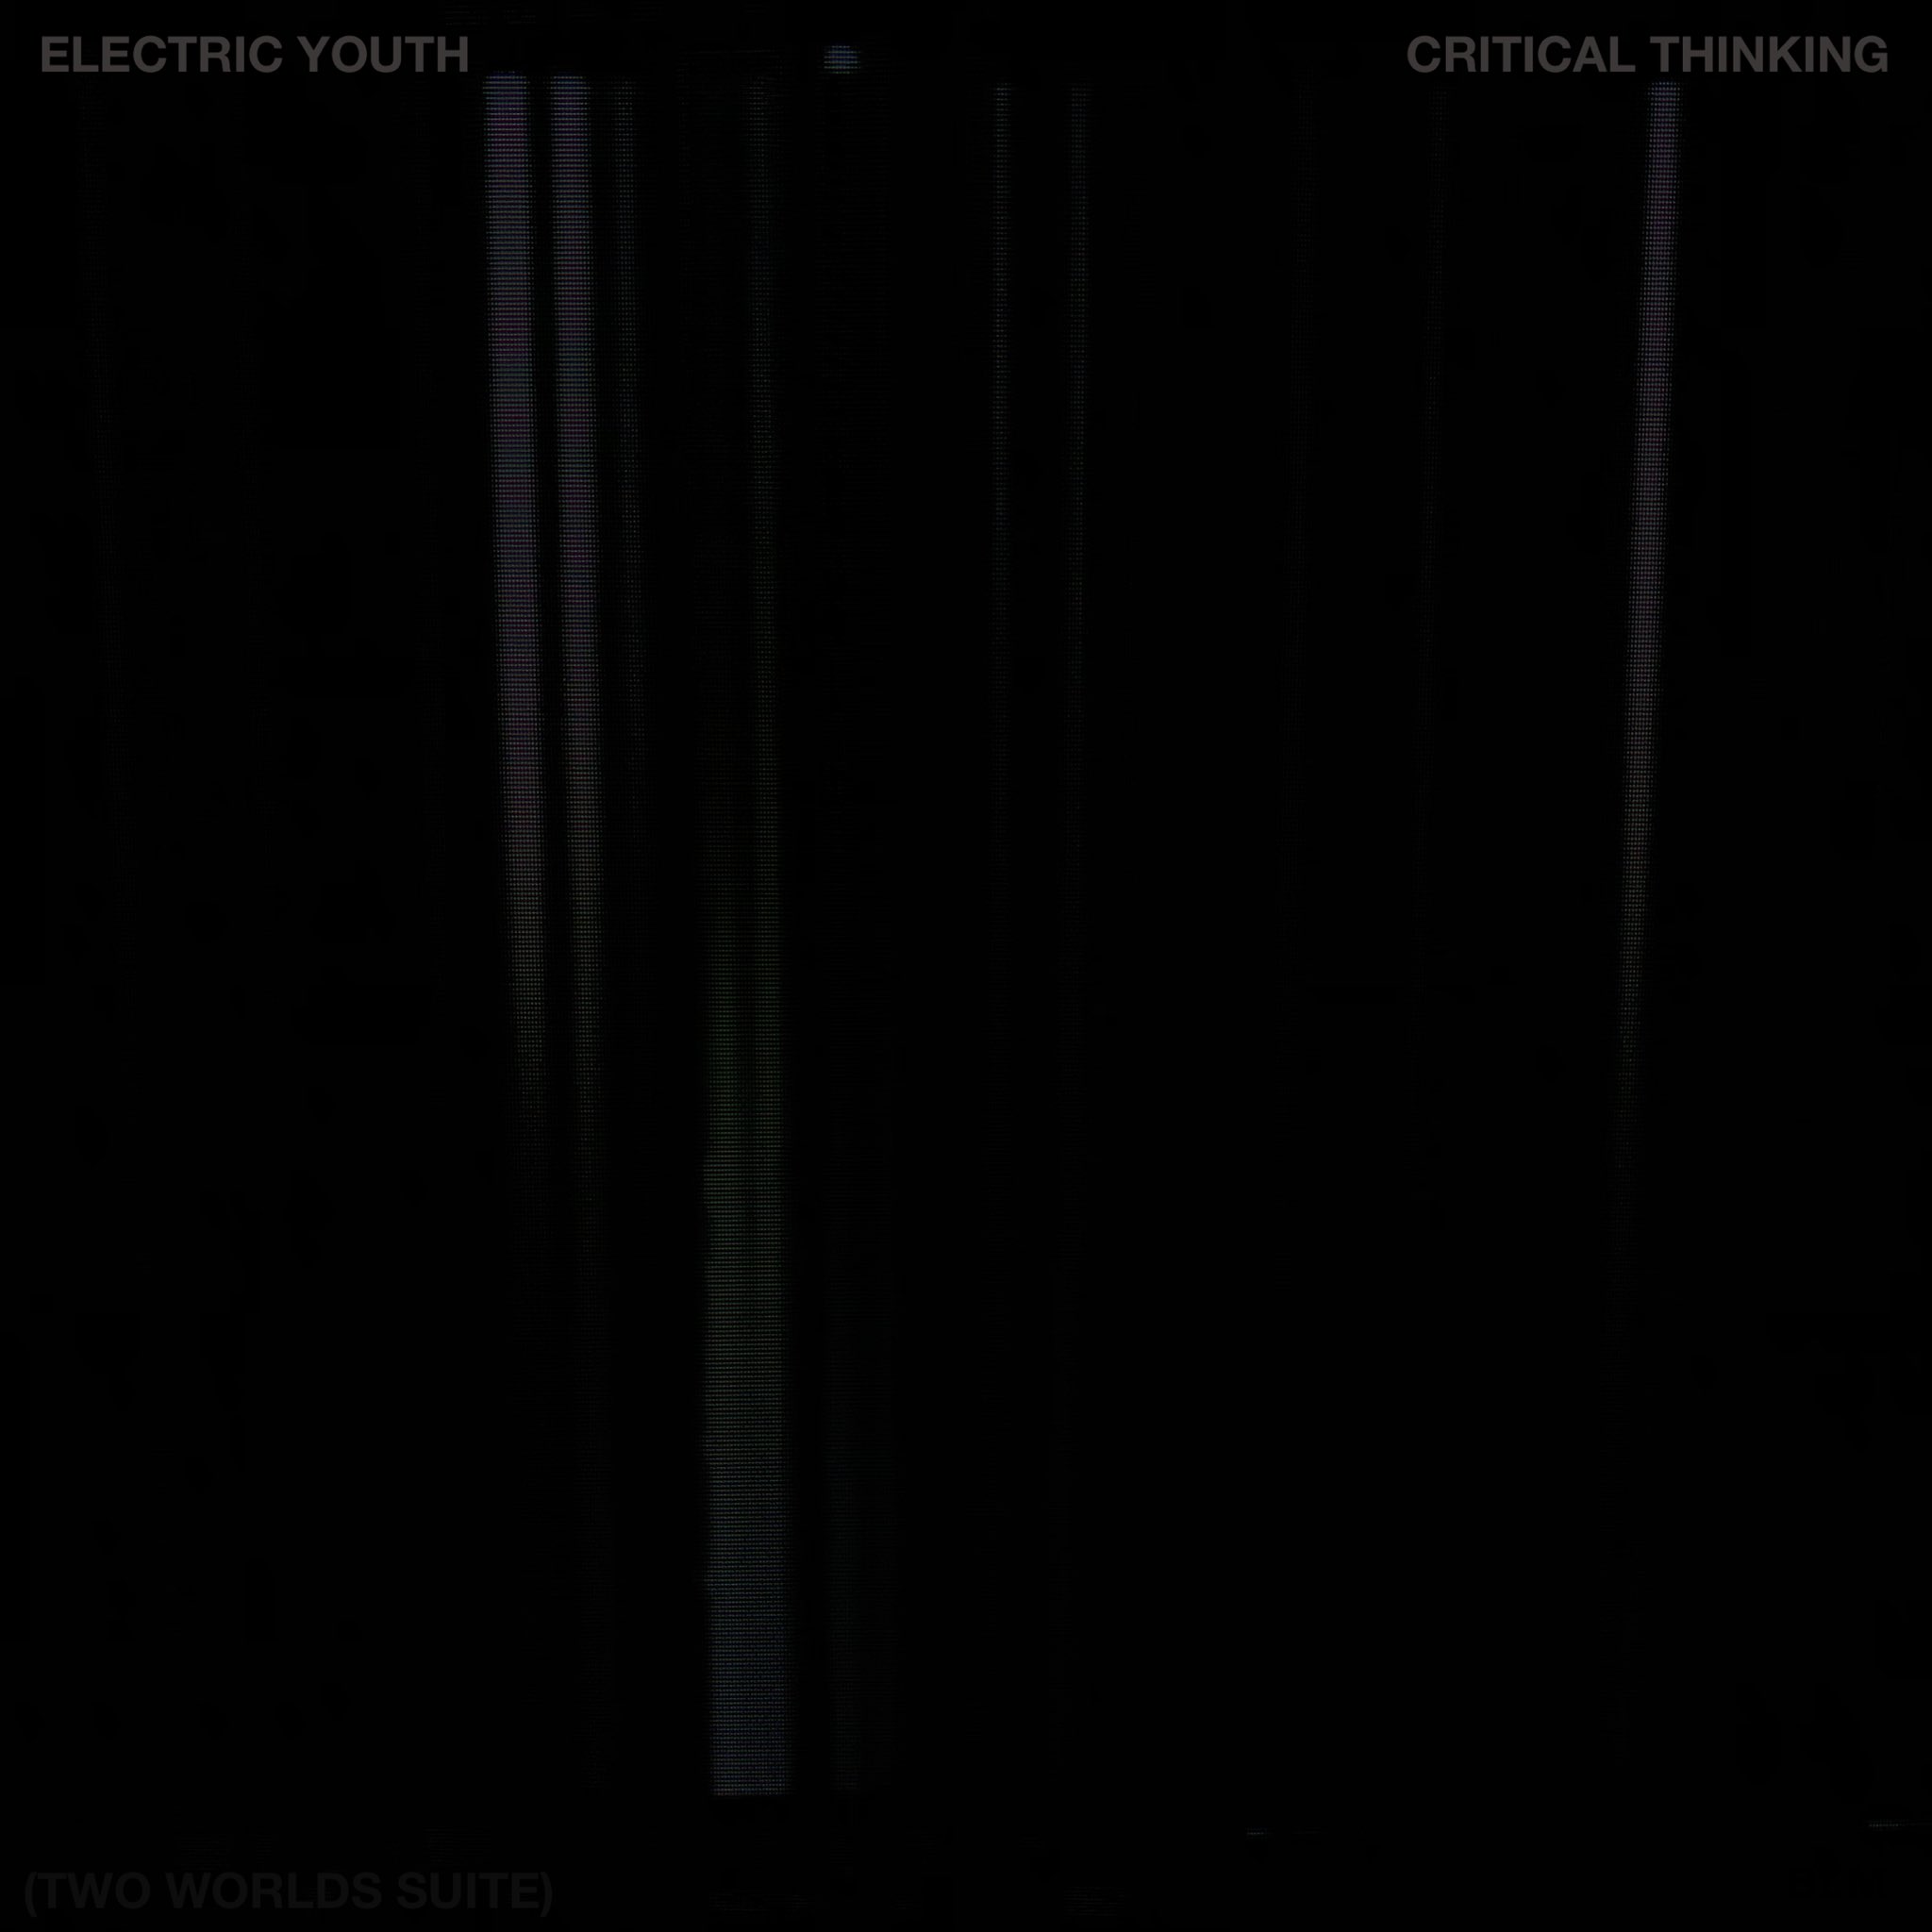 Okładka singla Critical Thinking (Two Worlds Suite) zespołu Electric Youth